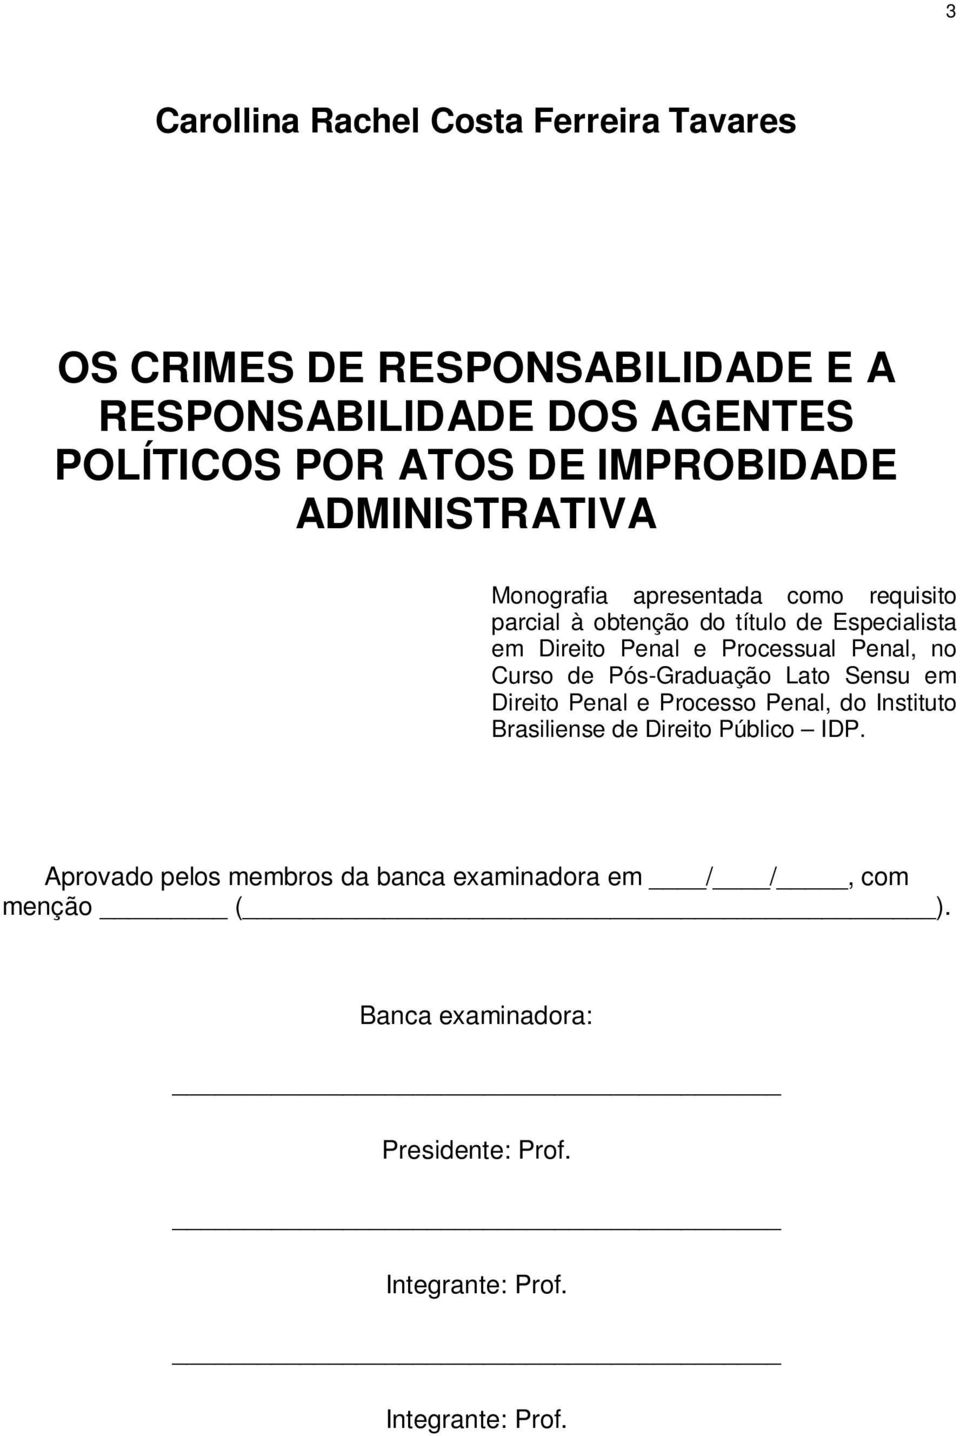 Processual Penal, no Curso de Pós-Graduação Lato Sensu em Direito Penal e Processo Penal, do Instituto Brasiliense de Direito Público